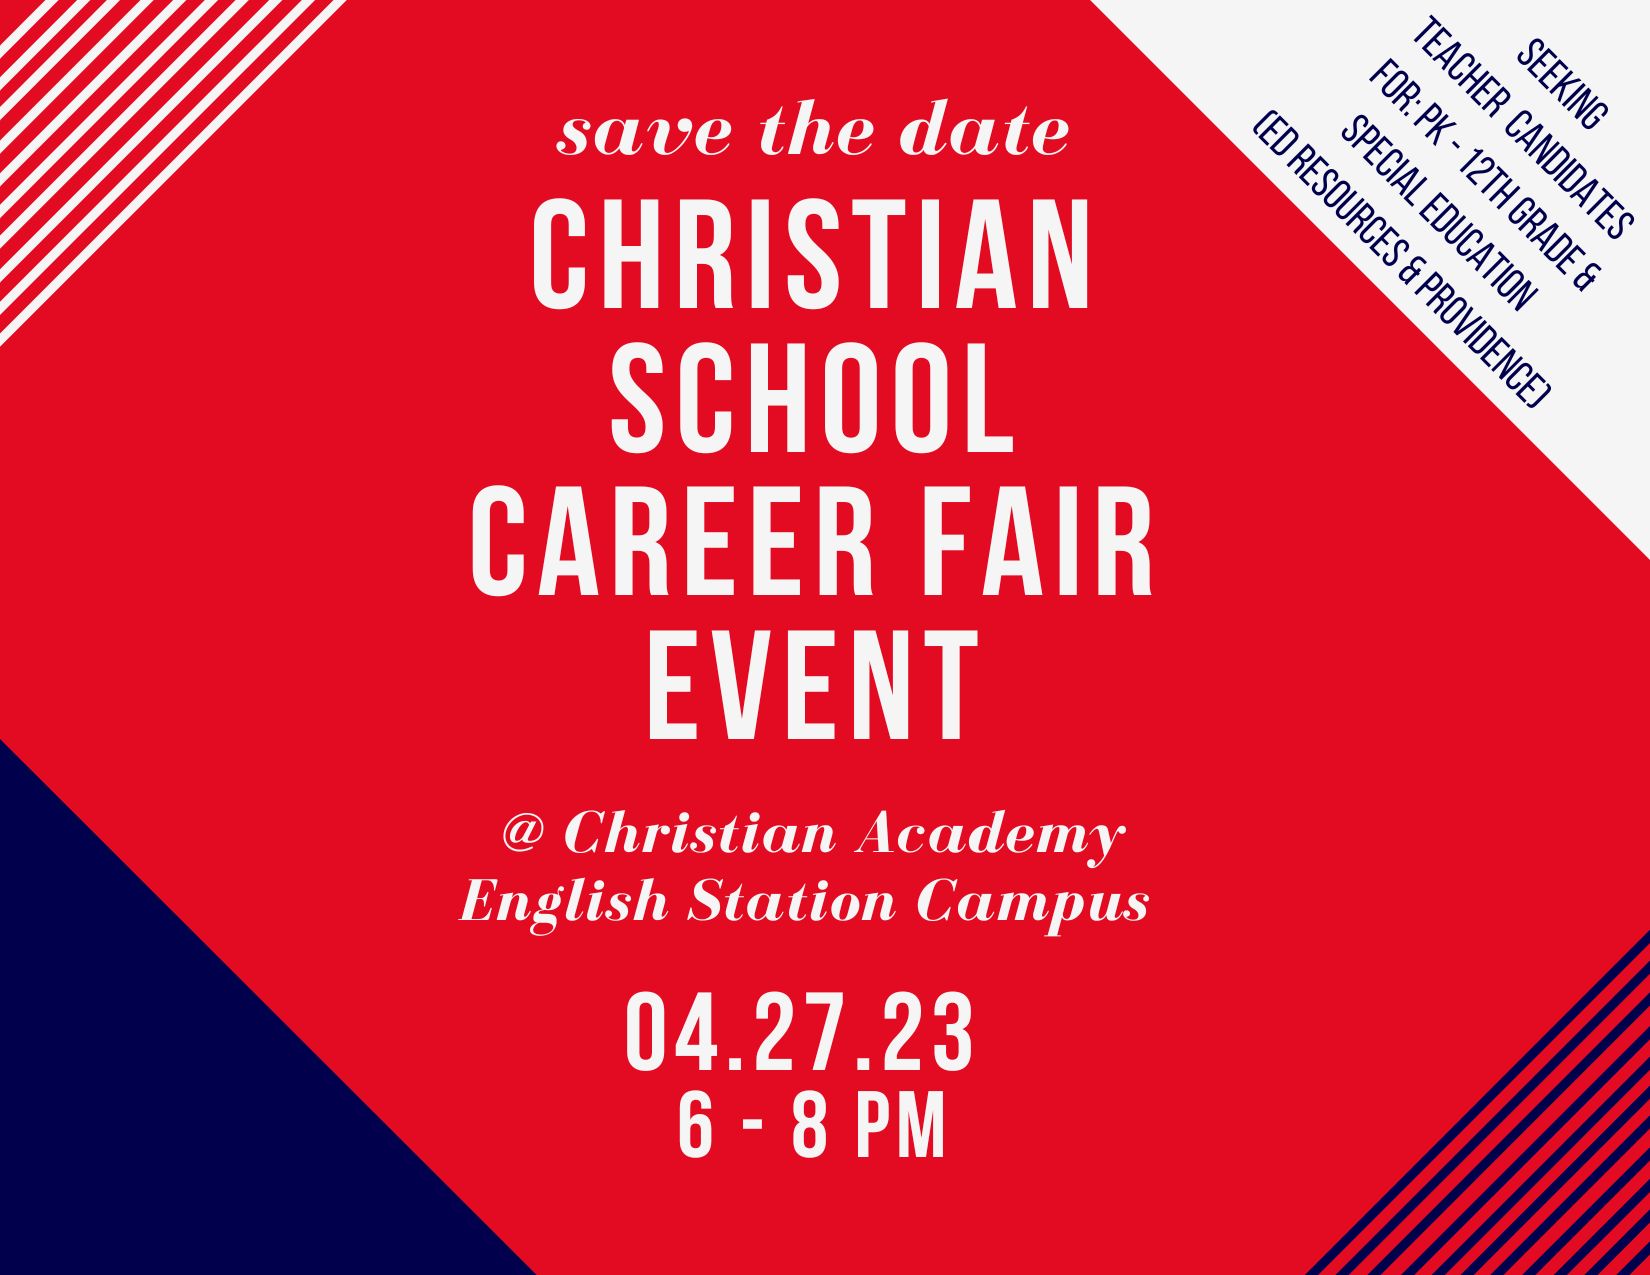 Christian Academy School System | Christian School Career Fair Event | April 27, 2023